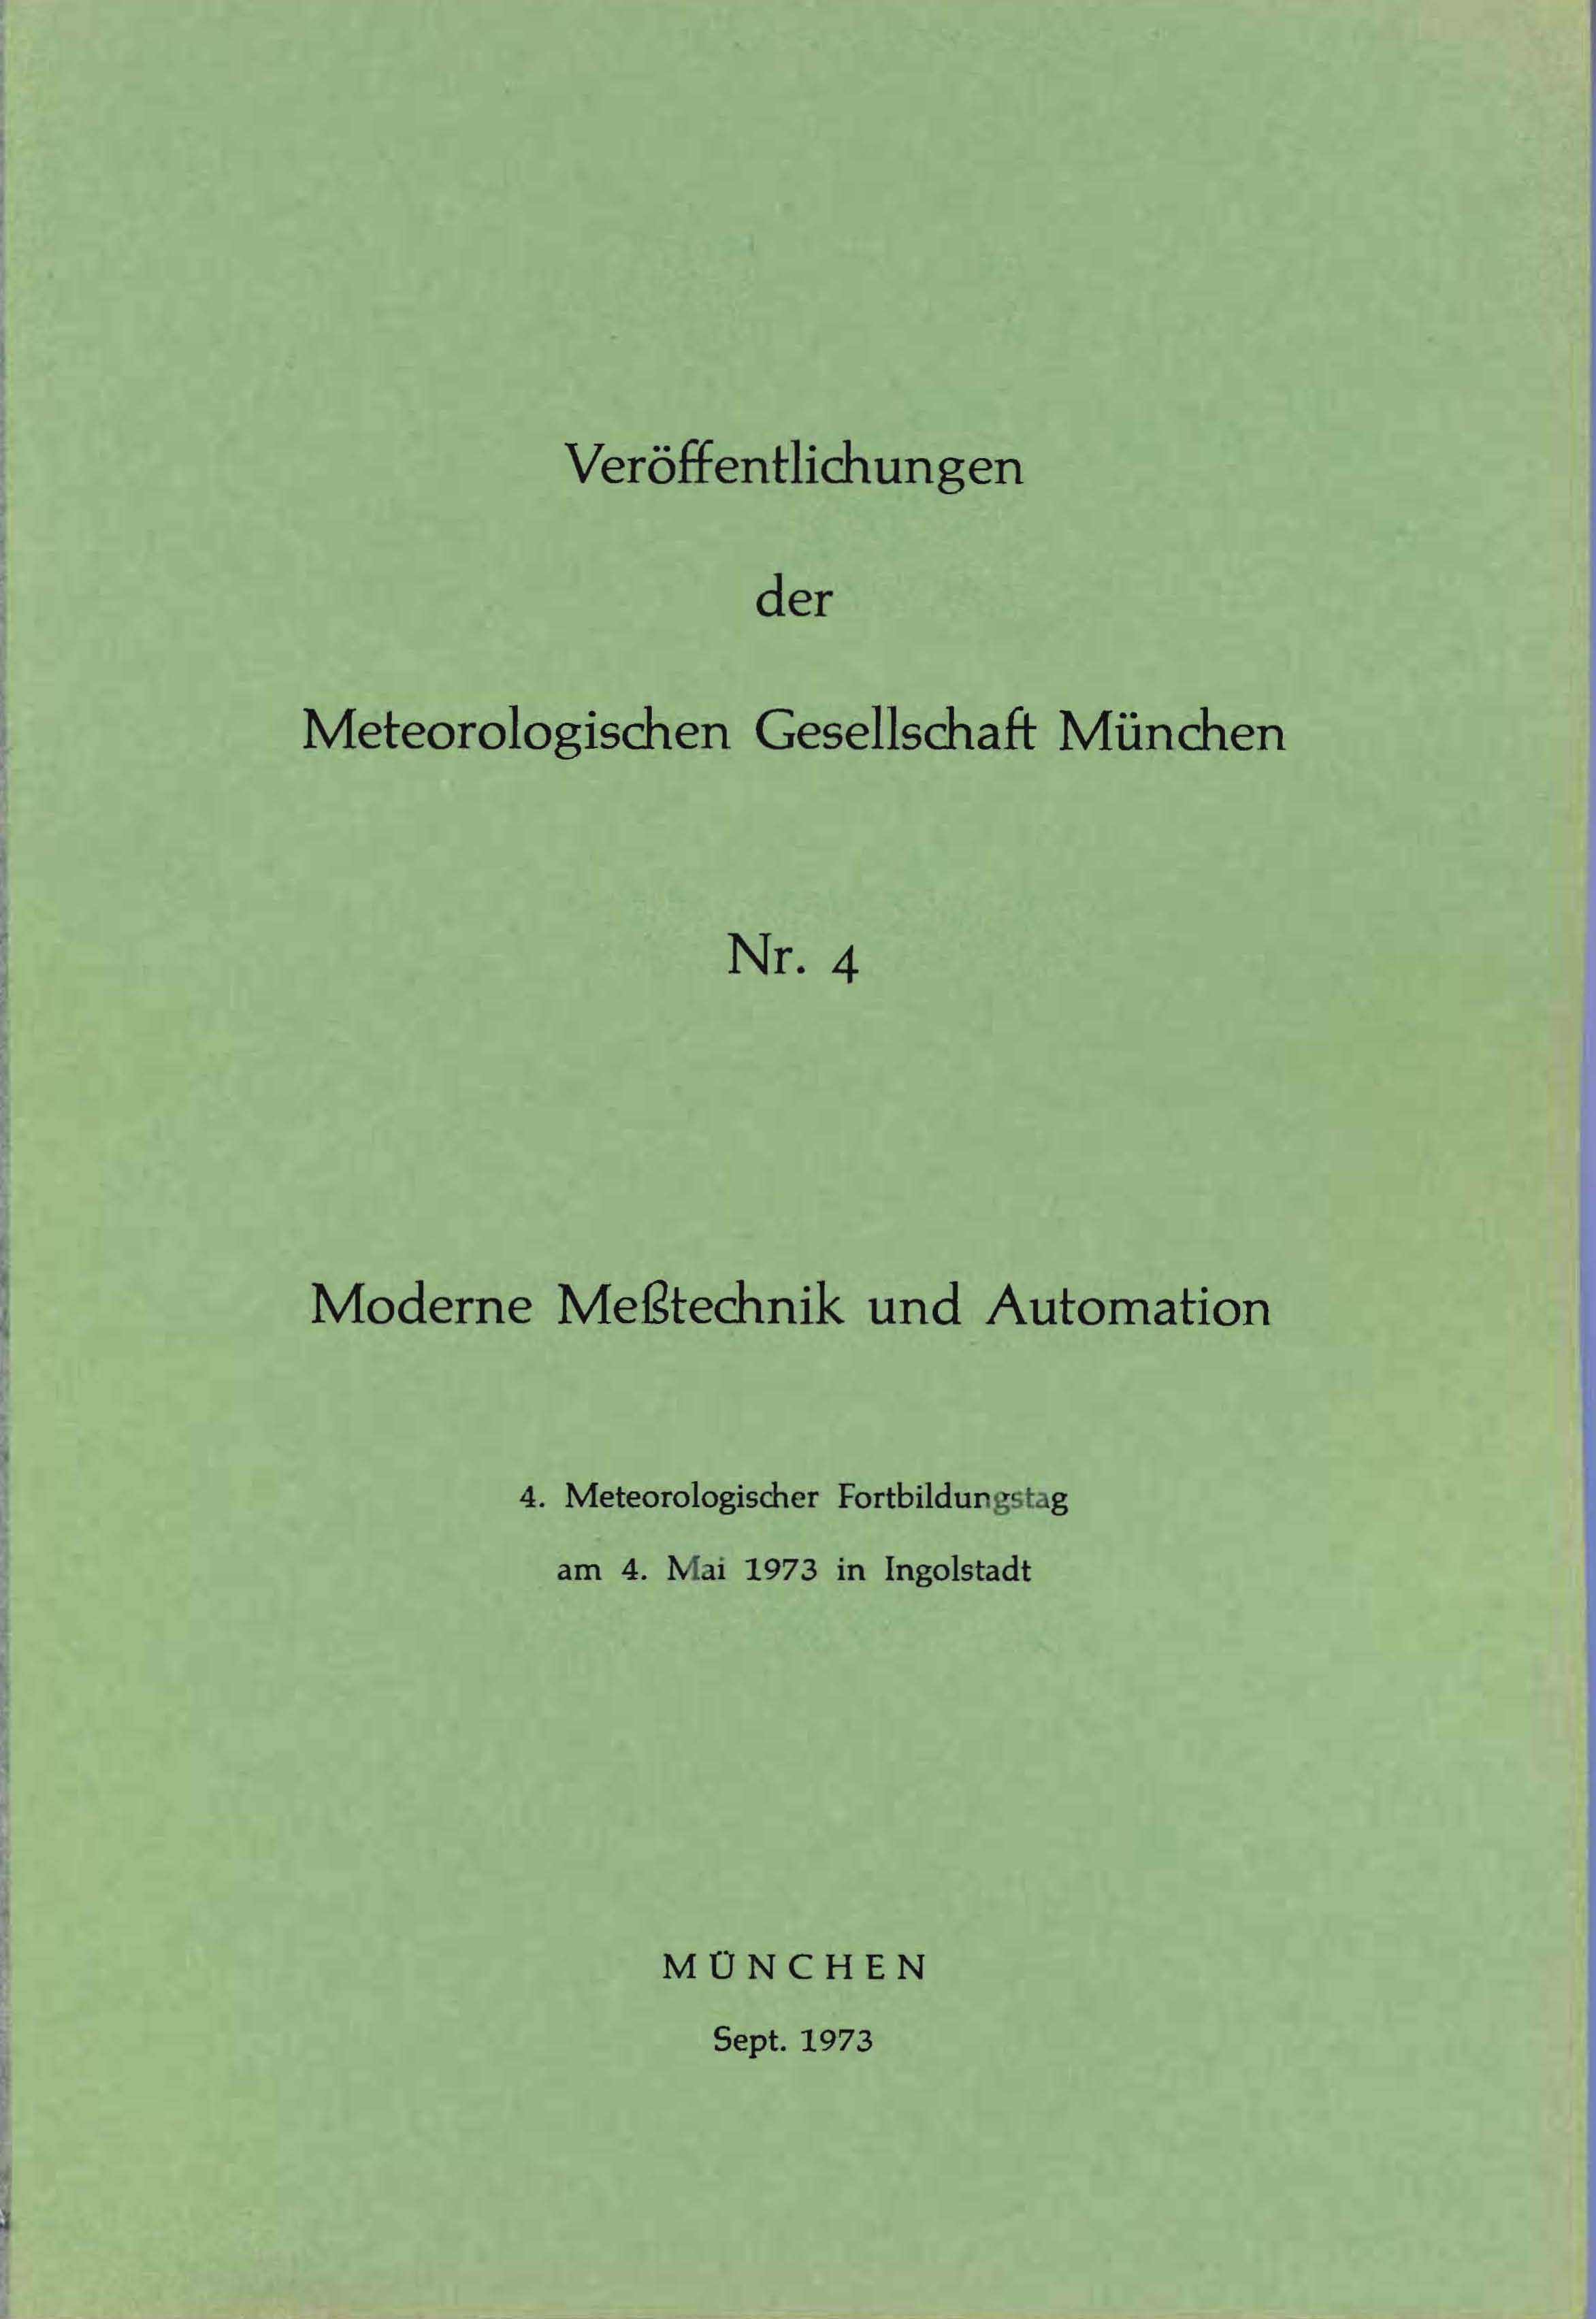 Veröffentlichung der Meterologischen Gesellschaft München